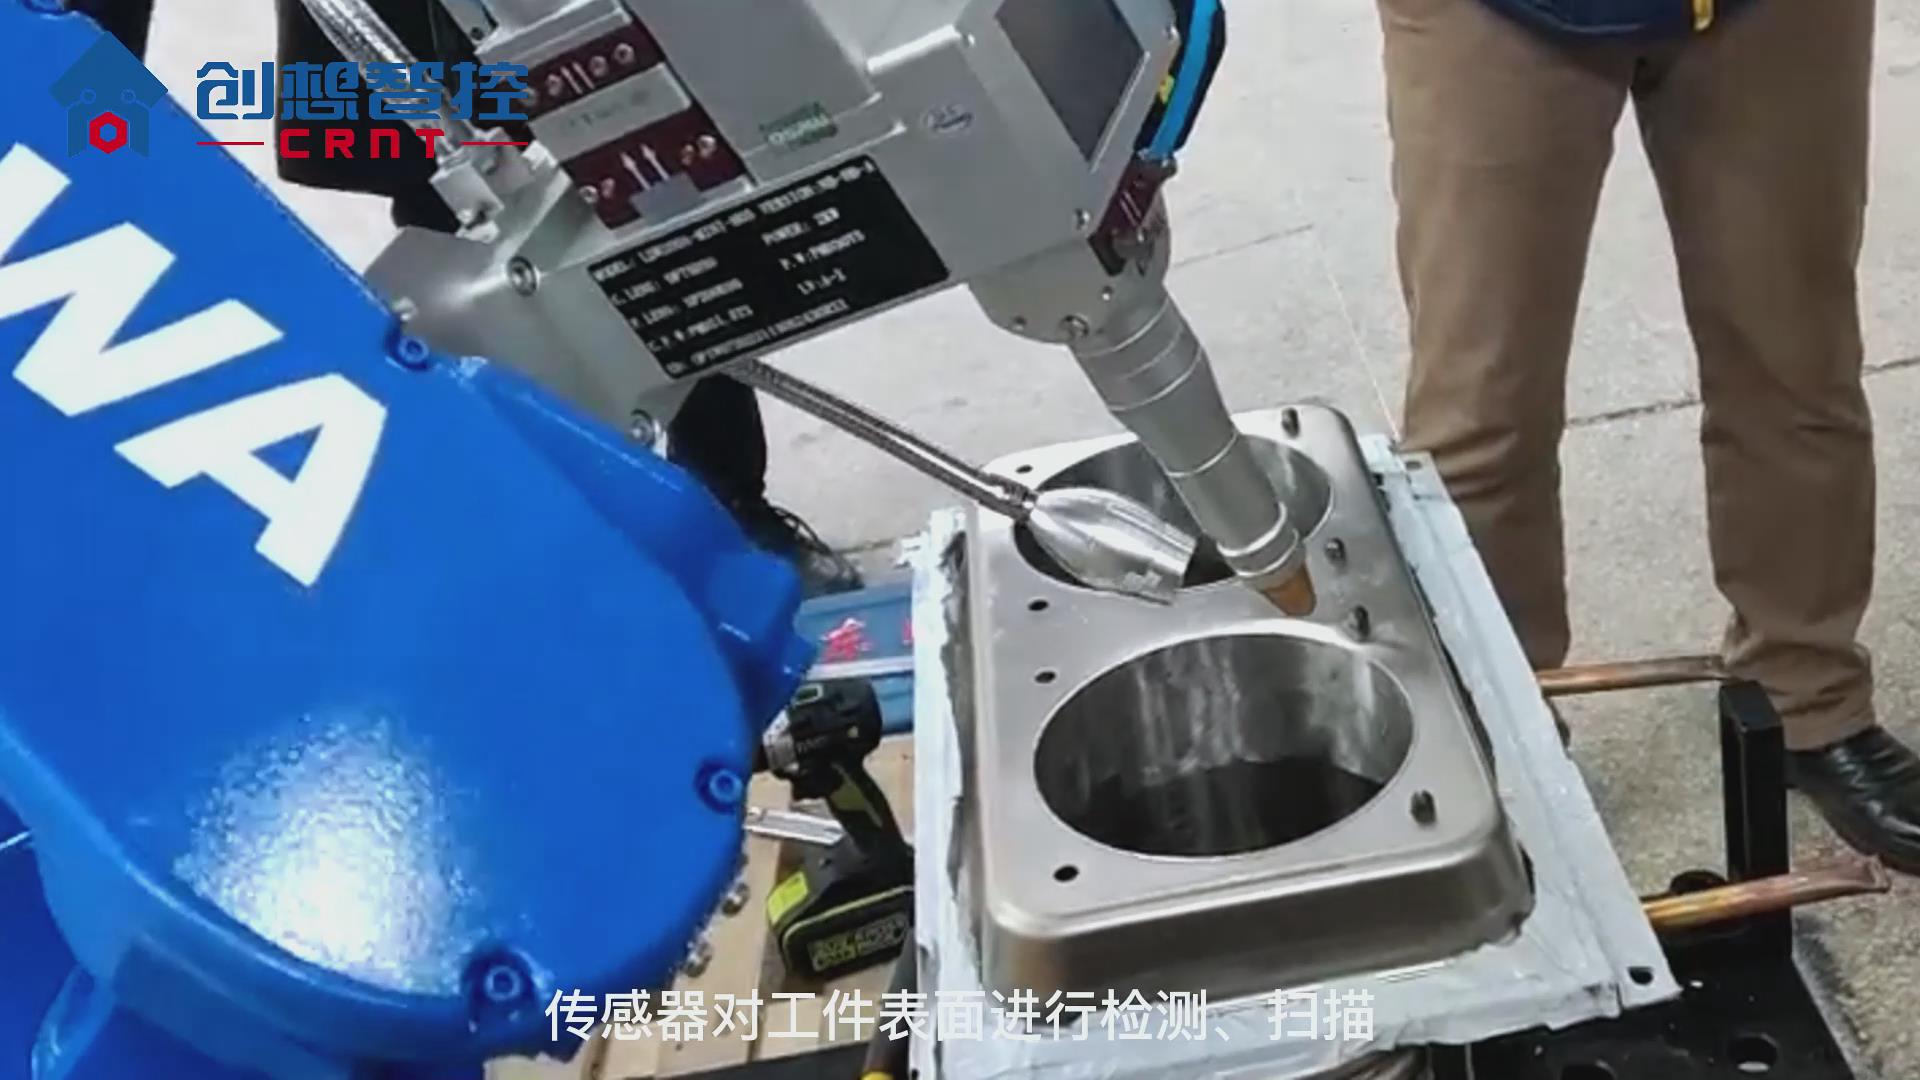 创想焊缝跟踪系统适配安川机器人在油箱自动焊接的应用案例